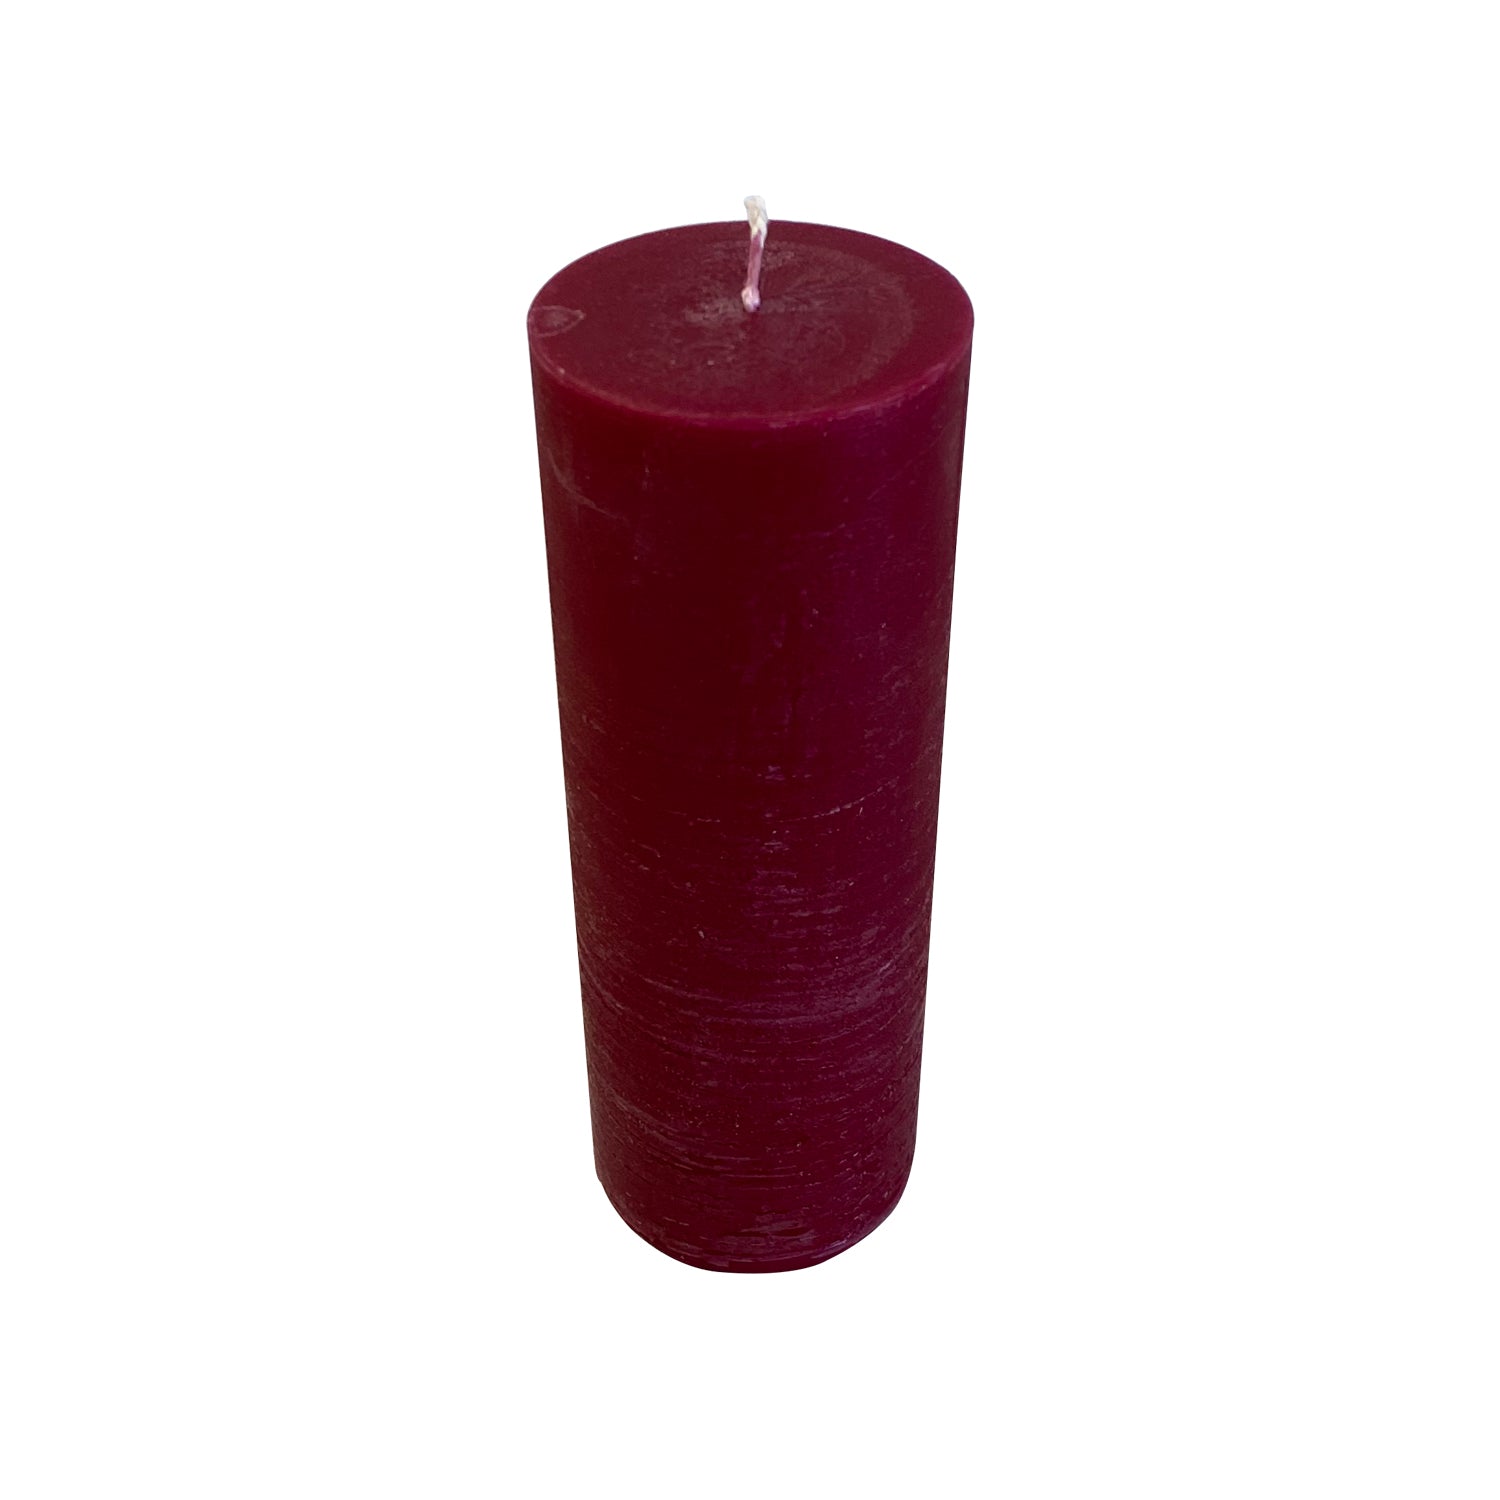 Blok lys - Vinrød (7cm i diameter)